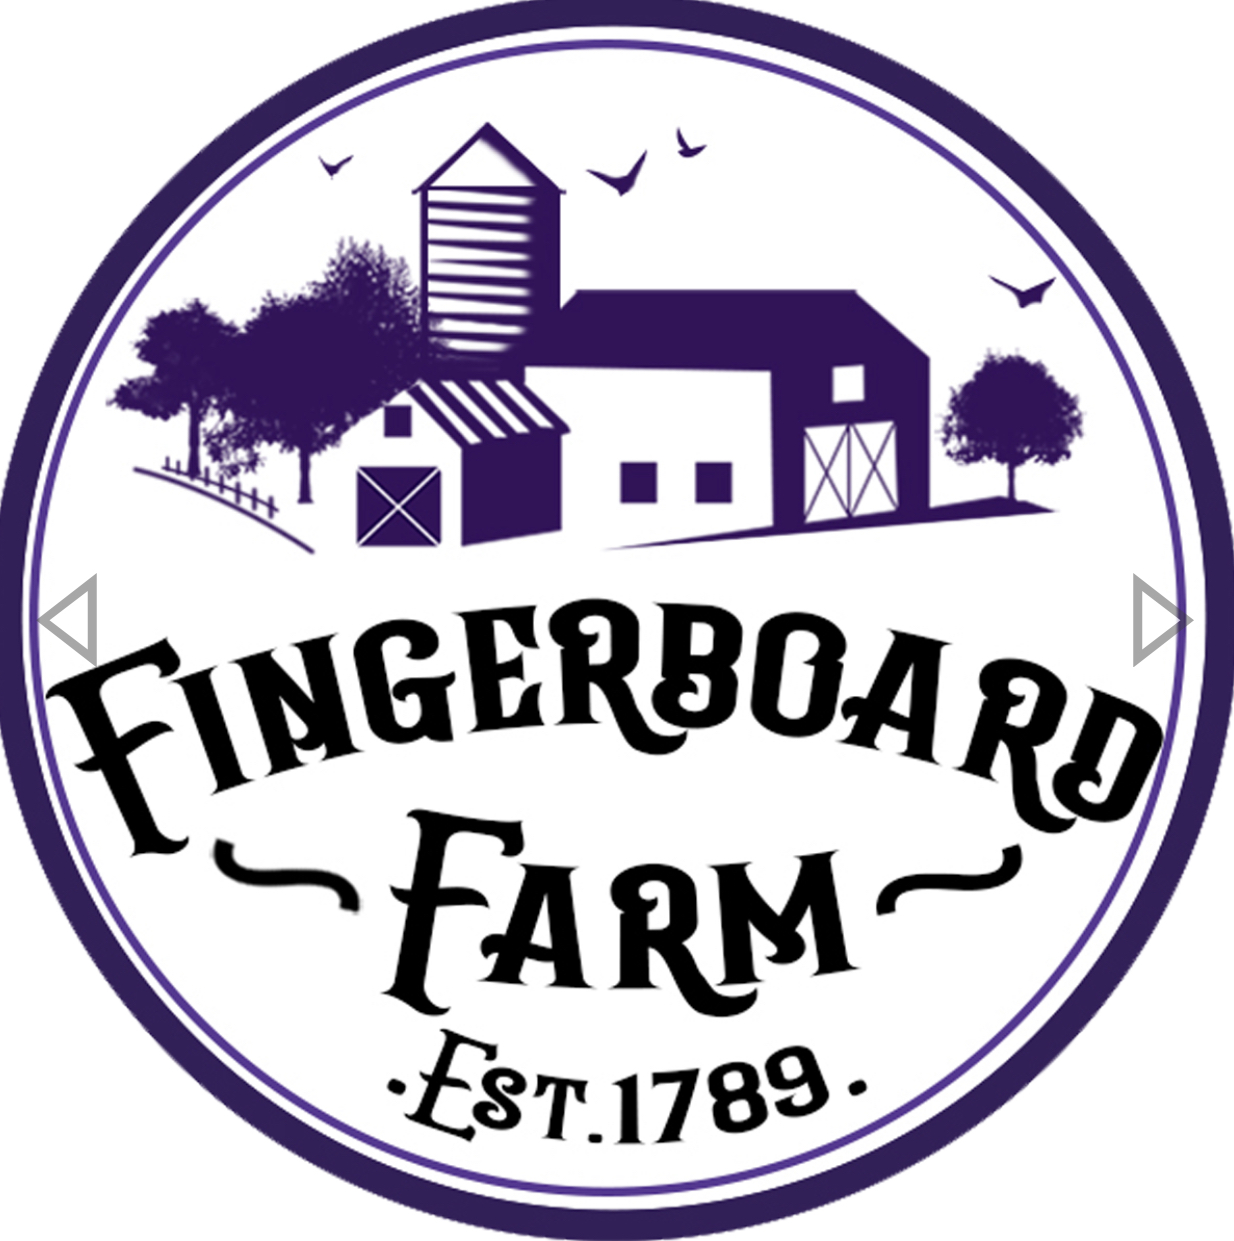 Fingerboard Farm & Market